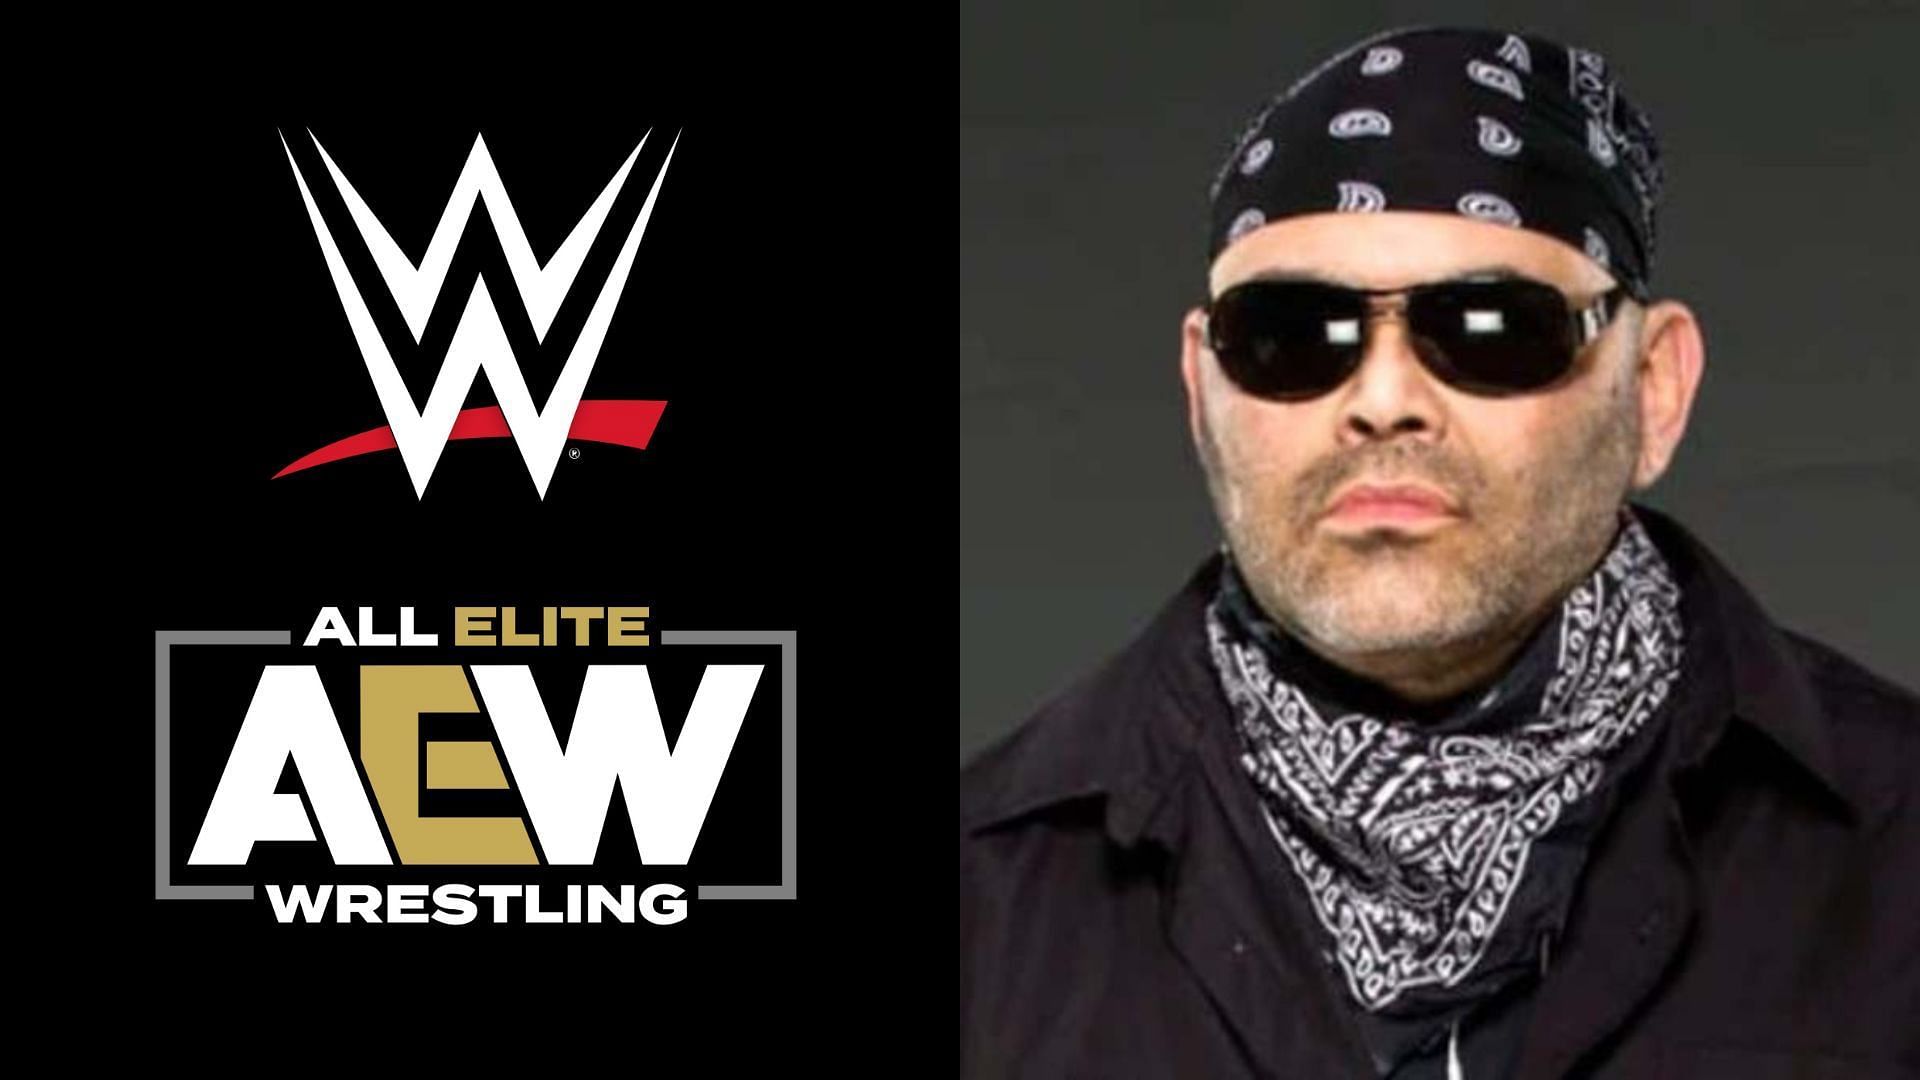 Konnan is a former WCW superstar